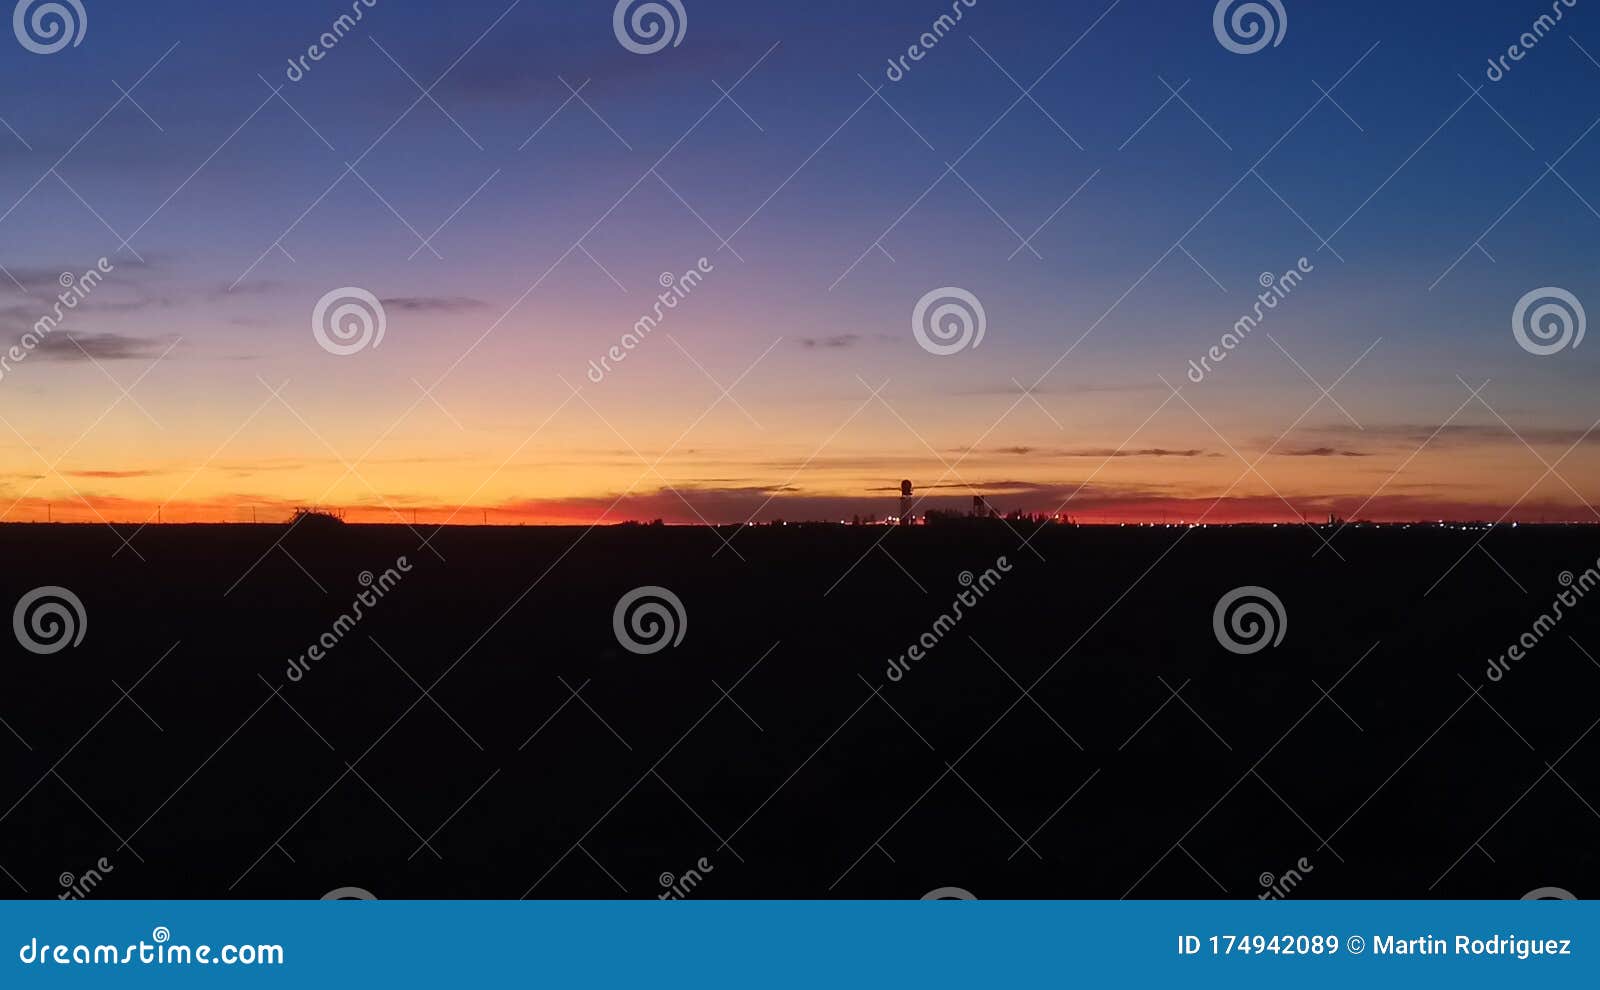 sunrise over nuequen centenario patagonia